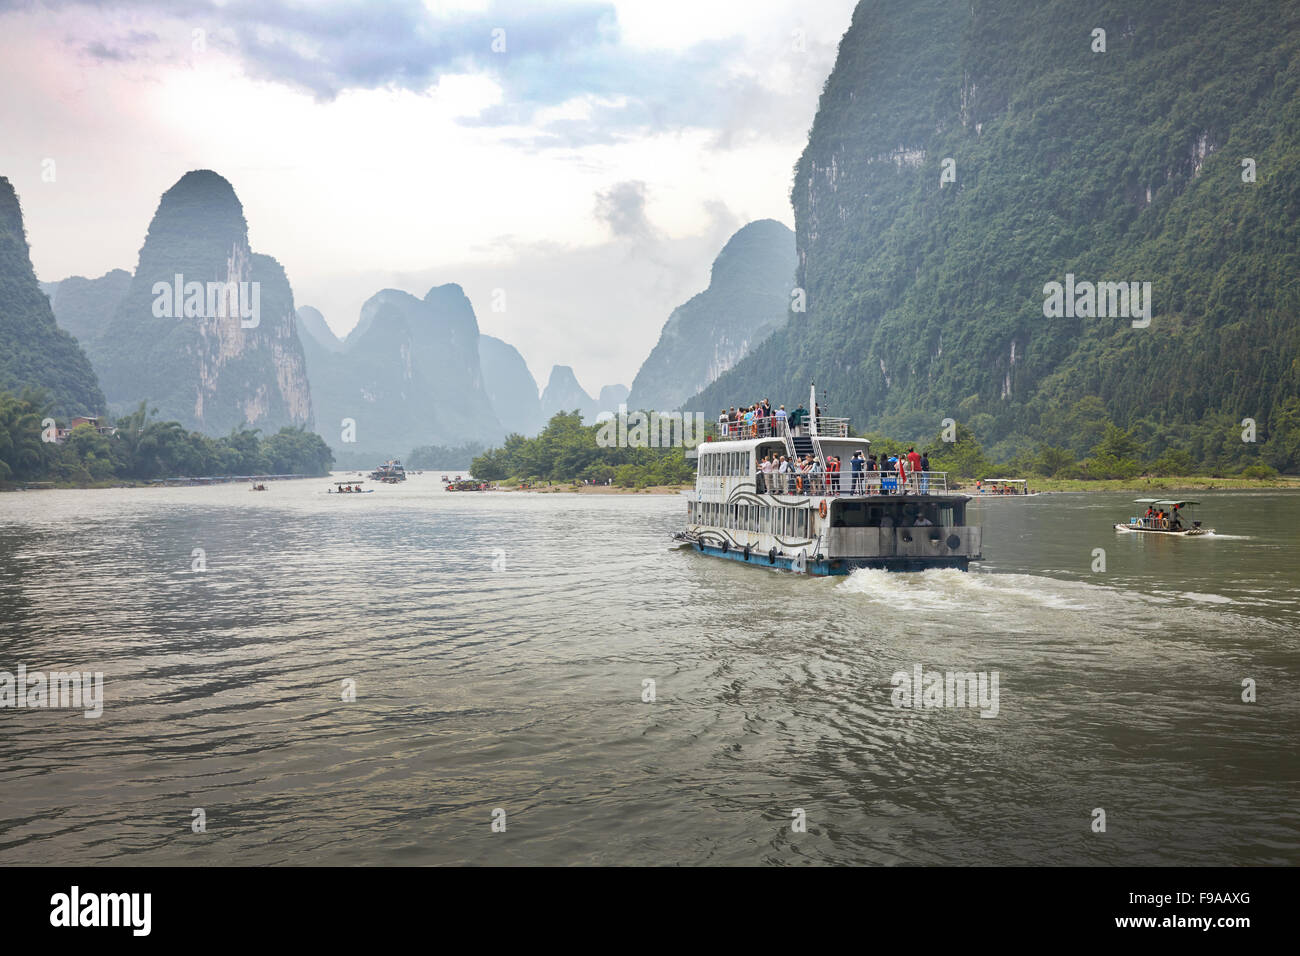 Li River, China Stock Photo